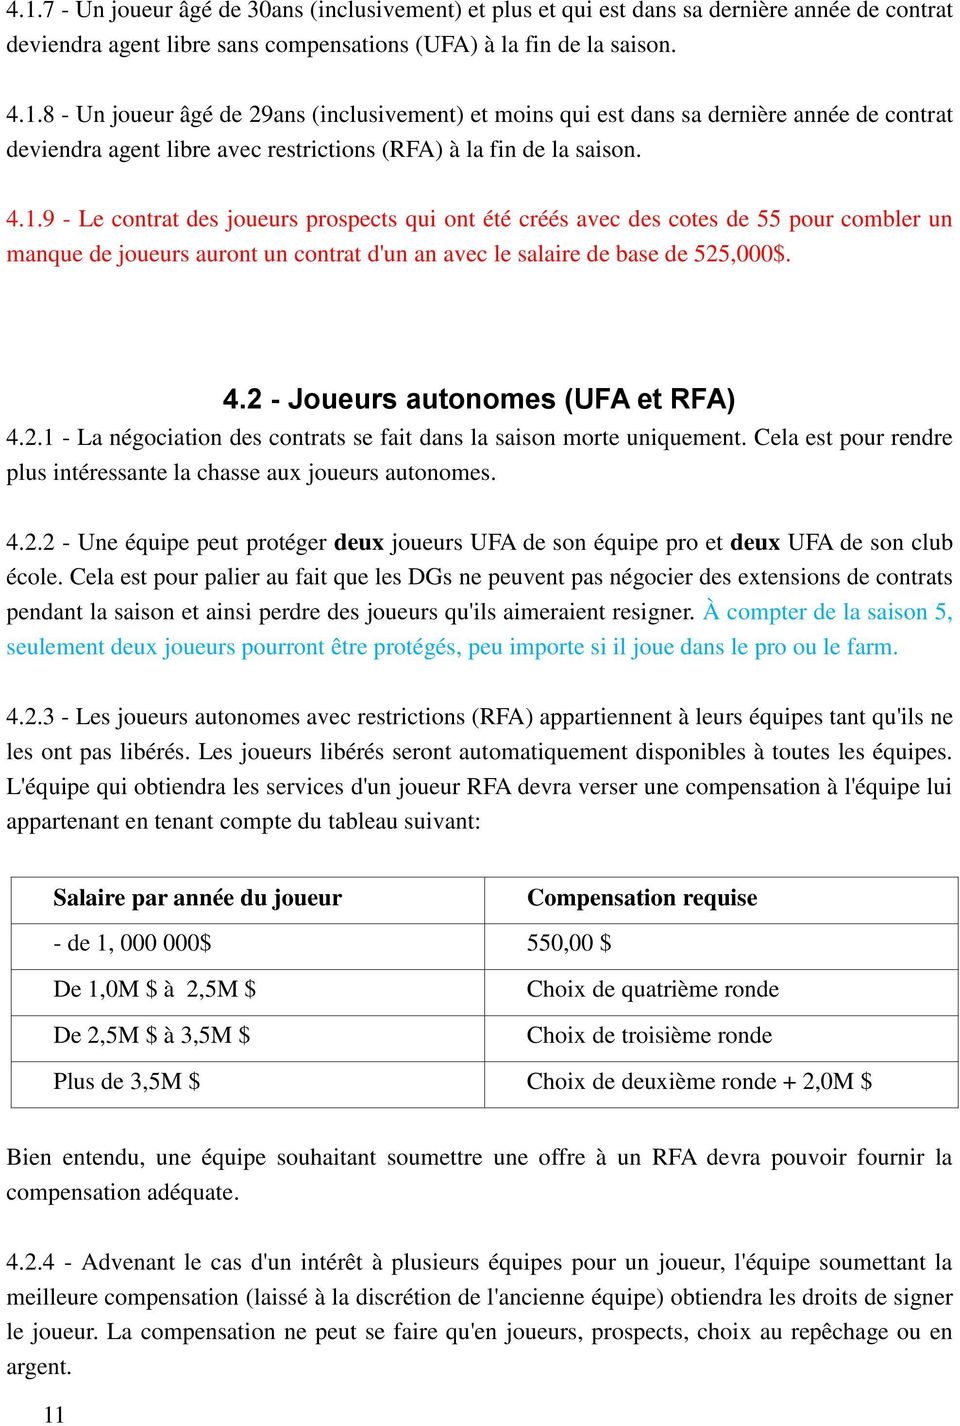 2 - Joueurs autonomes (UFA et RFA) 4.2.1 - La négociation des contrats se fait dans la saison morte uniquement. Cela est pour rendre plus intéressante la chasse aux joueurs autonomes. 4.2.2 - Une équipe peut protéger deux joueurs UFA de son équipe pro et deux UFA de son club école.